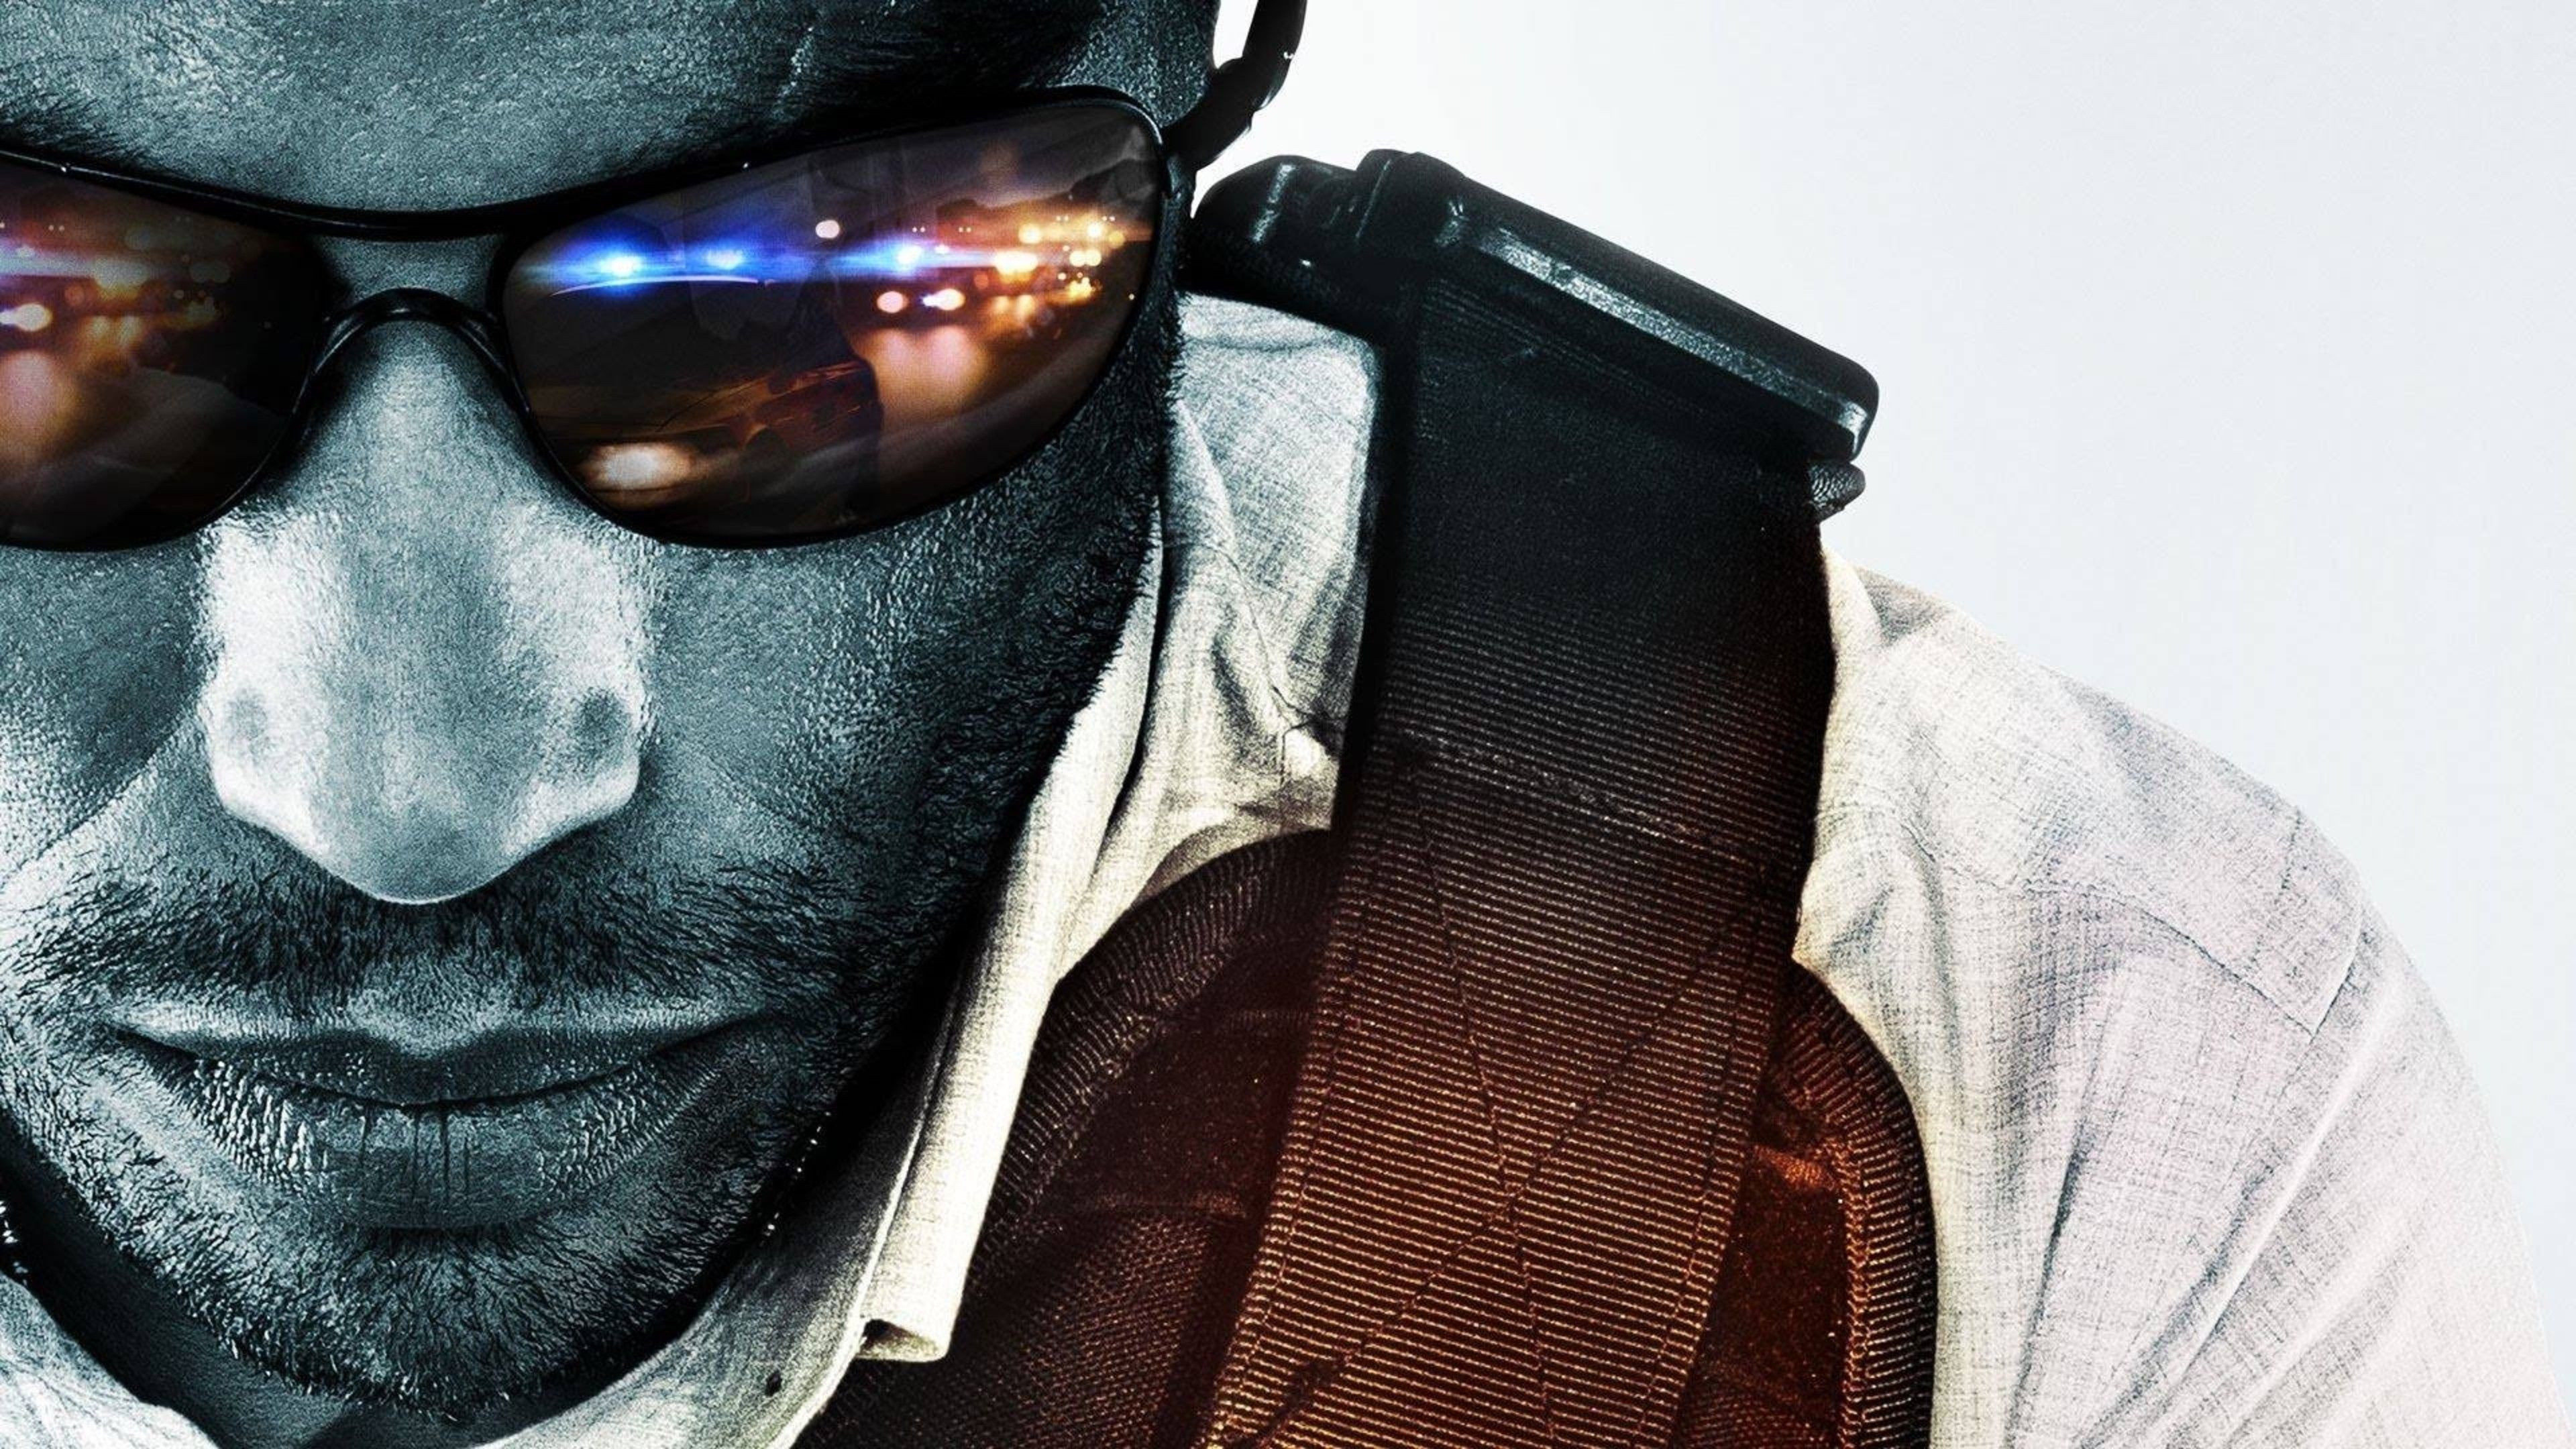 Battlefield Hardline, HD Games, 4k Wallpaper, Image, Background